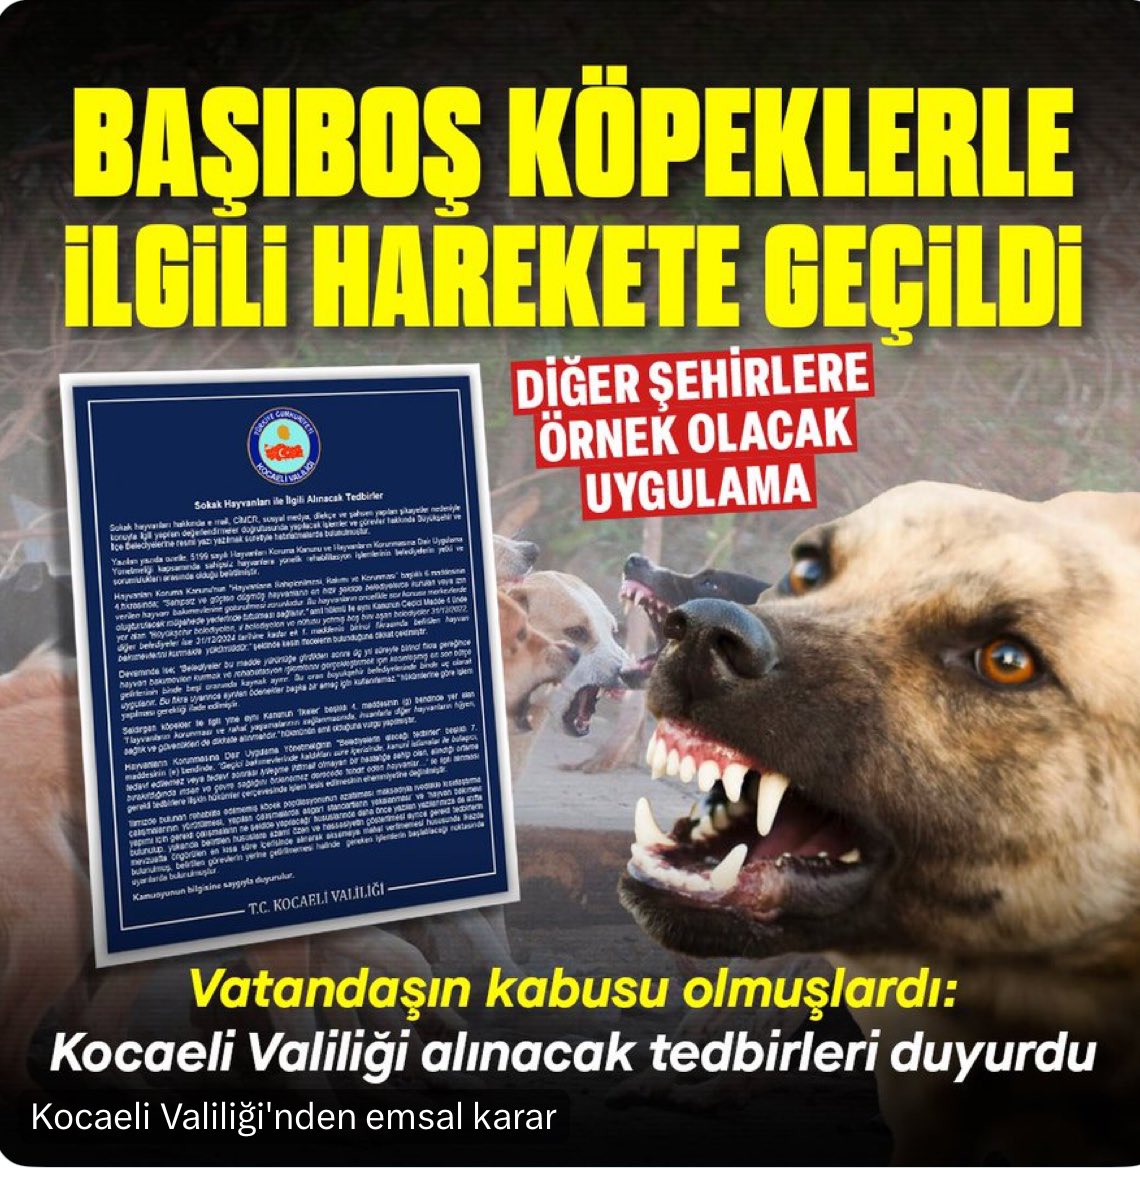 Başıboş Köpek terörü konusunda tüm valiliklerden aynı hassasiyeti bekliyoruz. Tebrikler @kocaelivaliligi 

Kocaeli Valiliği, il ve ilçe belediyelerine, başıboş köpeklerin acısız bir şekilde itlaf edilmesi talimatı verdi.